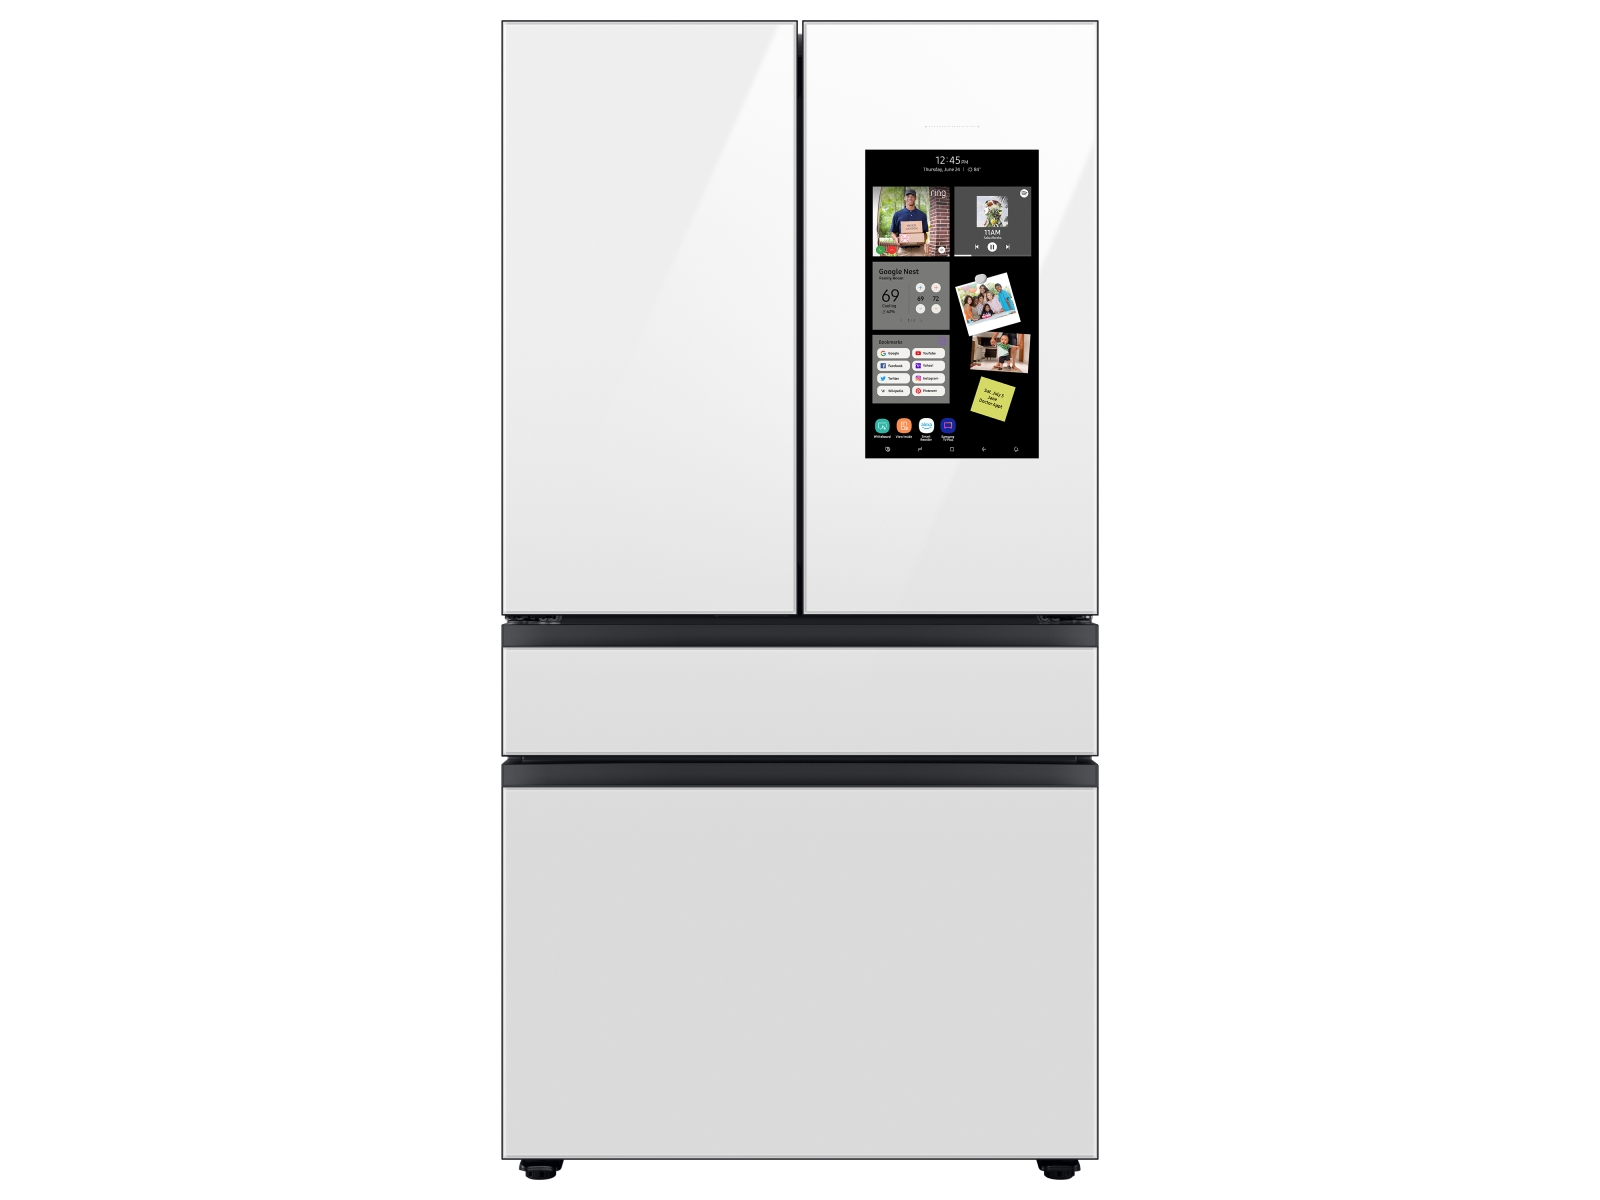 Bespoke 4-Door French Door Refrigerator (23 cu. ft.) – with Family